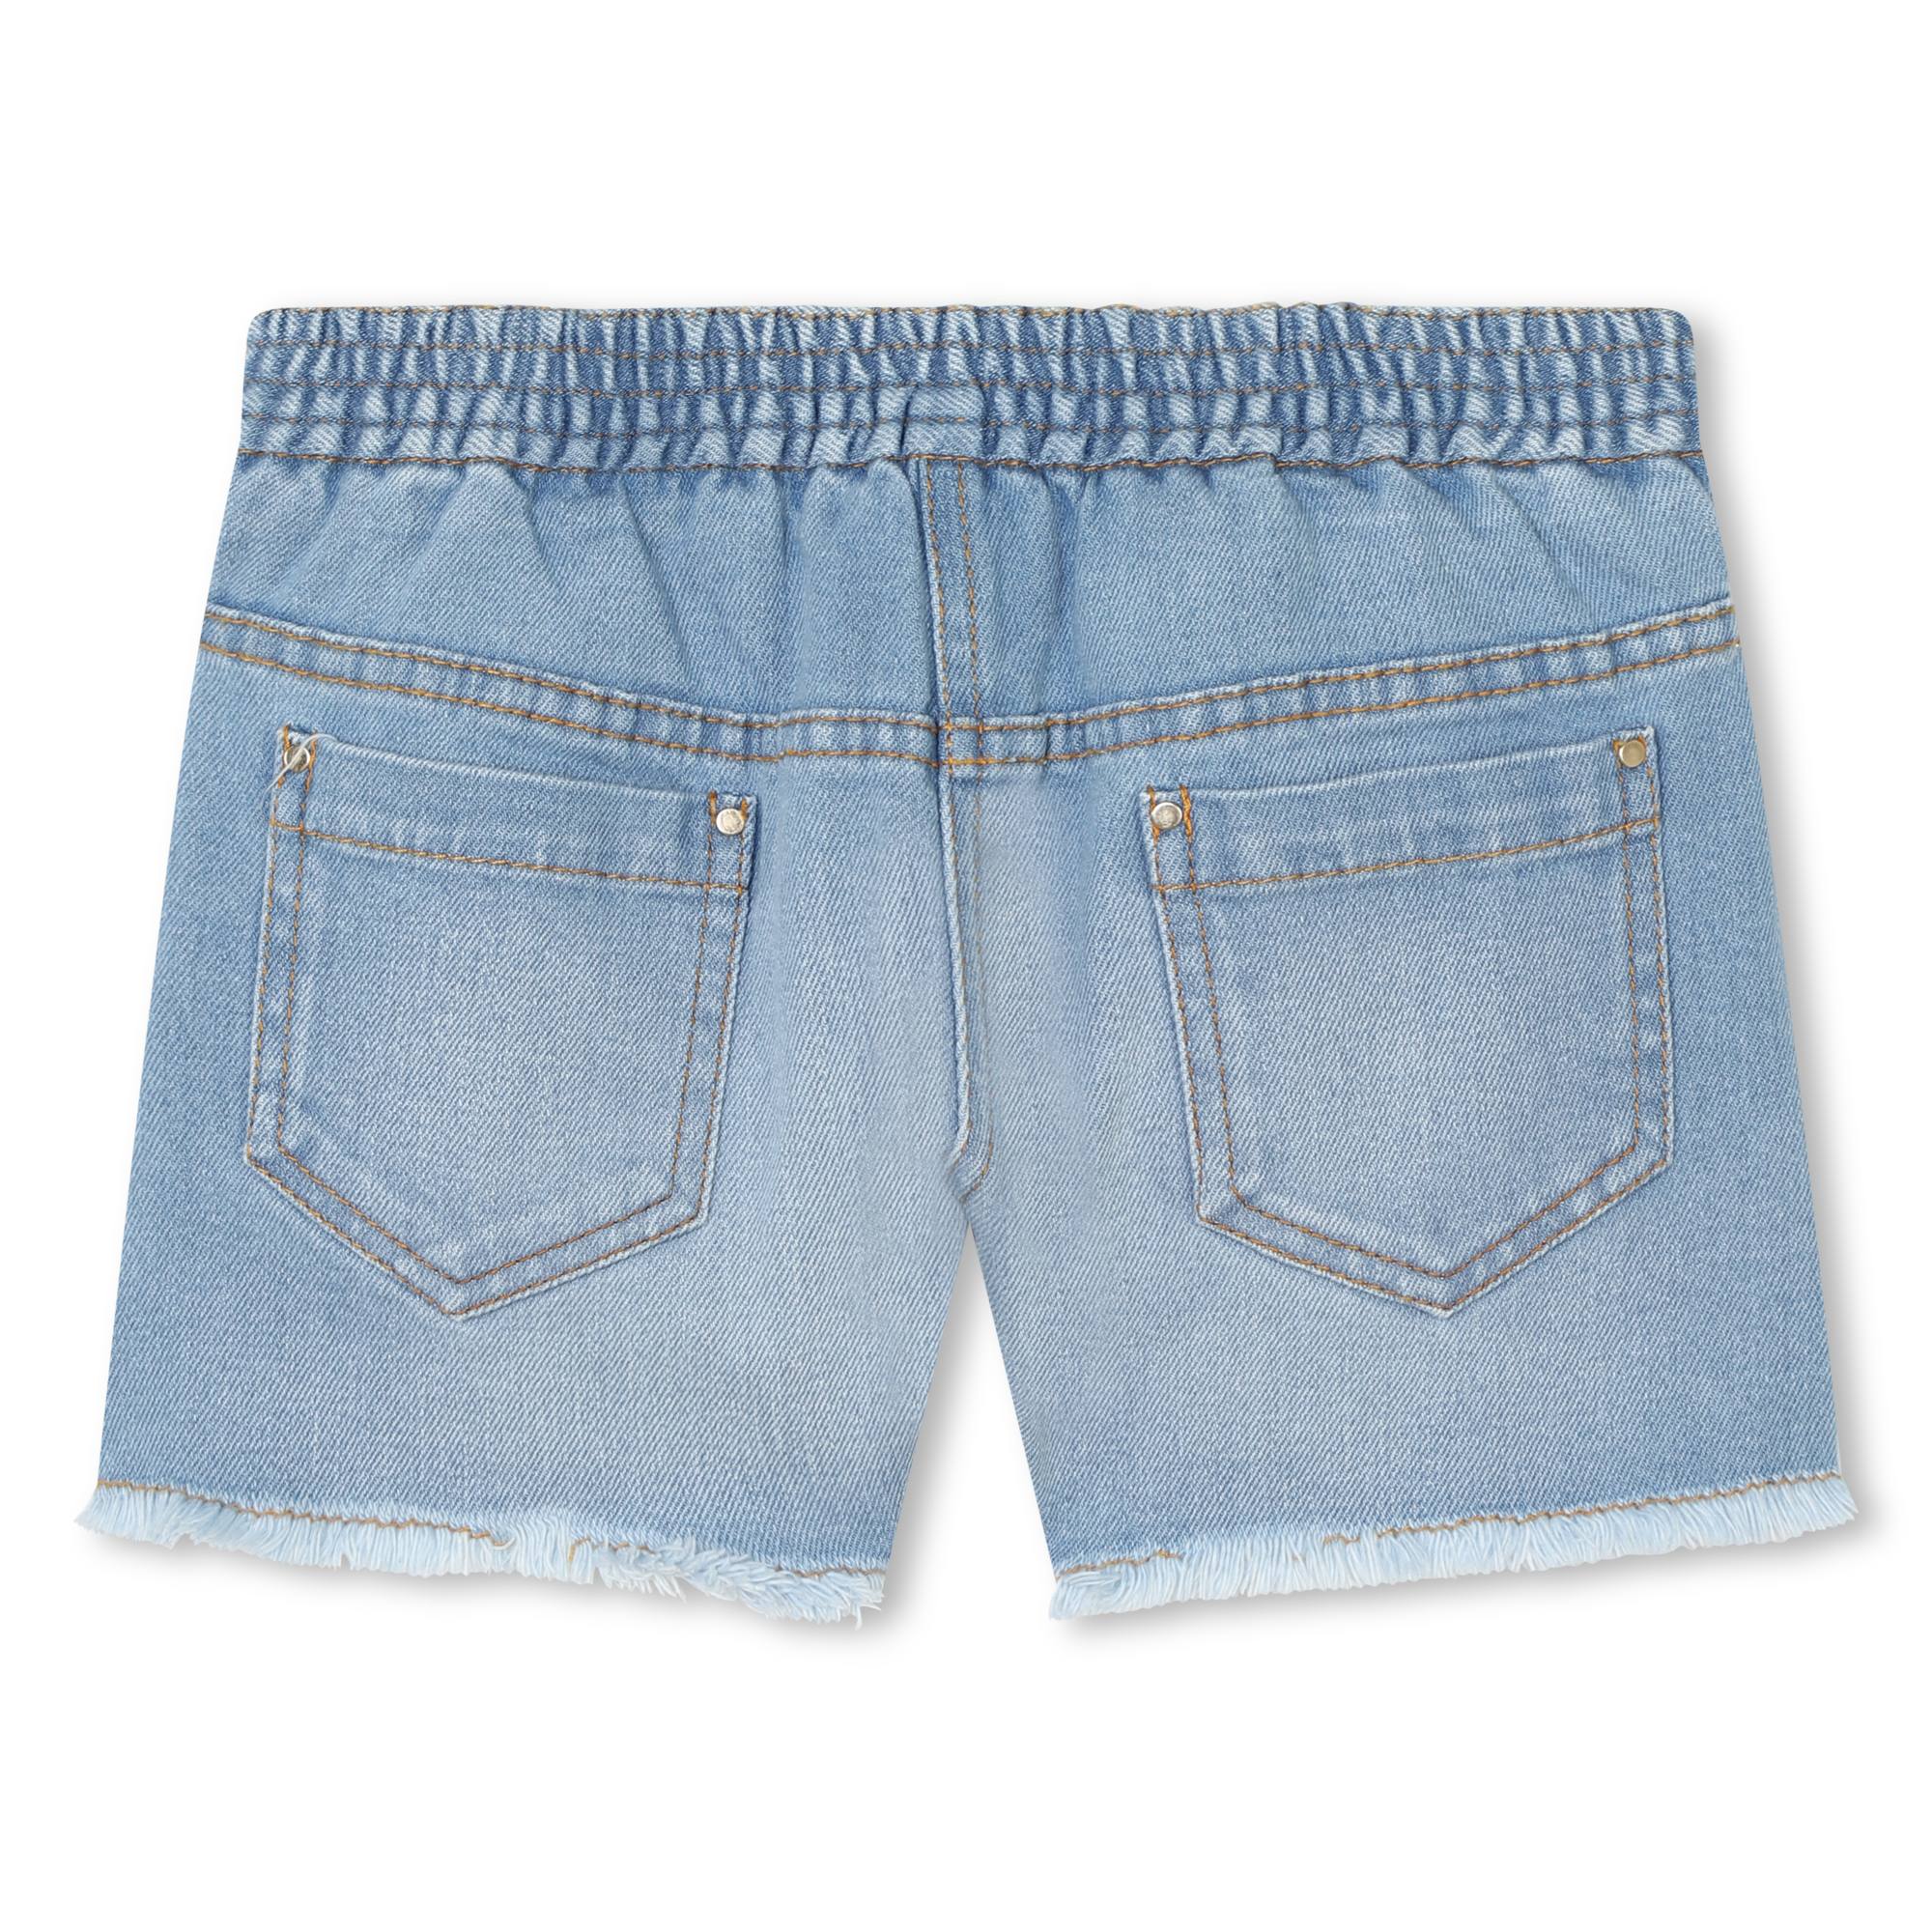 Ausgefranste Jeans-Shorts CHLOE Für MÄDCHEN